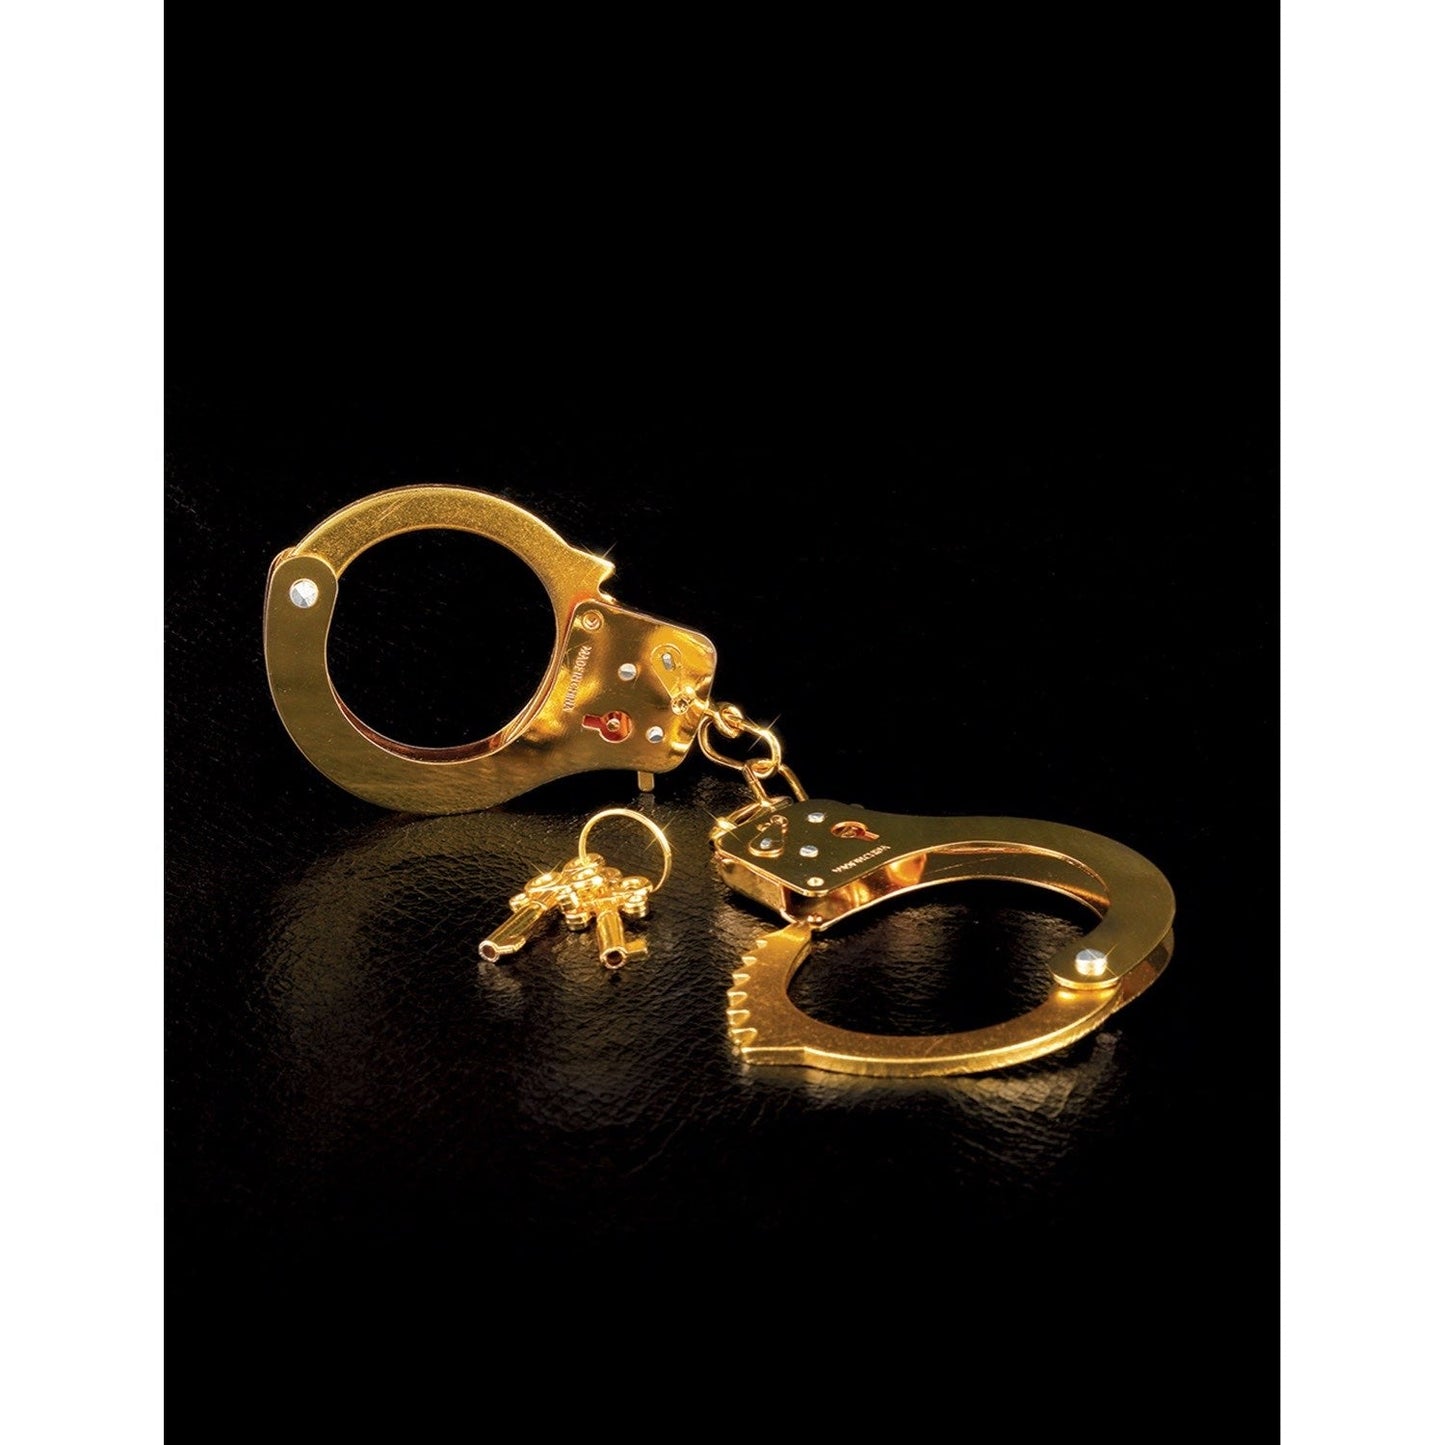 Metal Cuffs - Gold Restraints